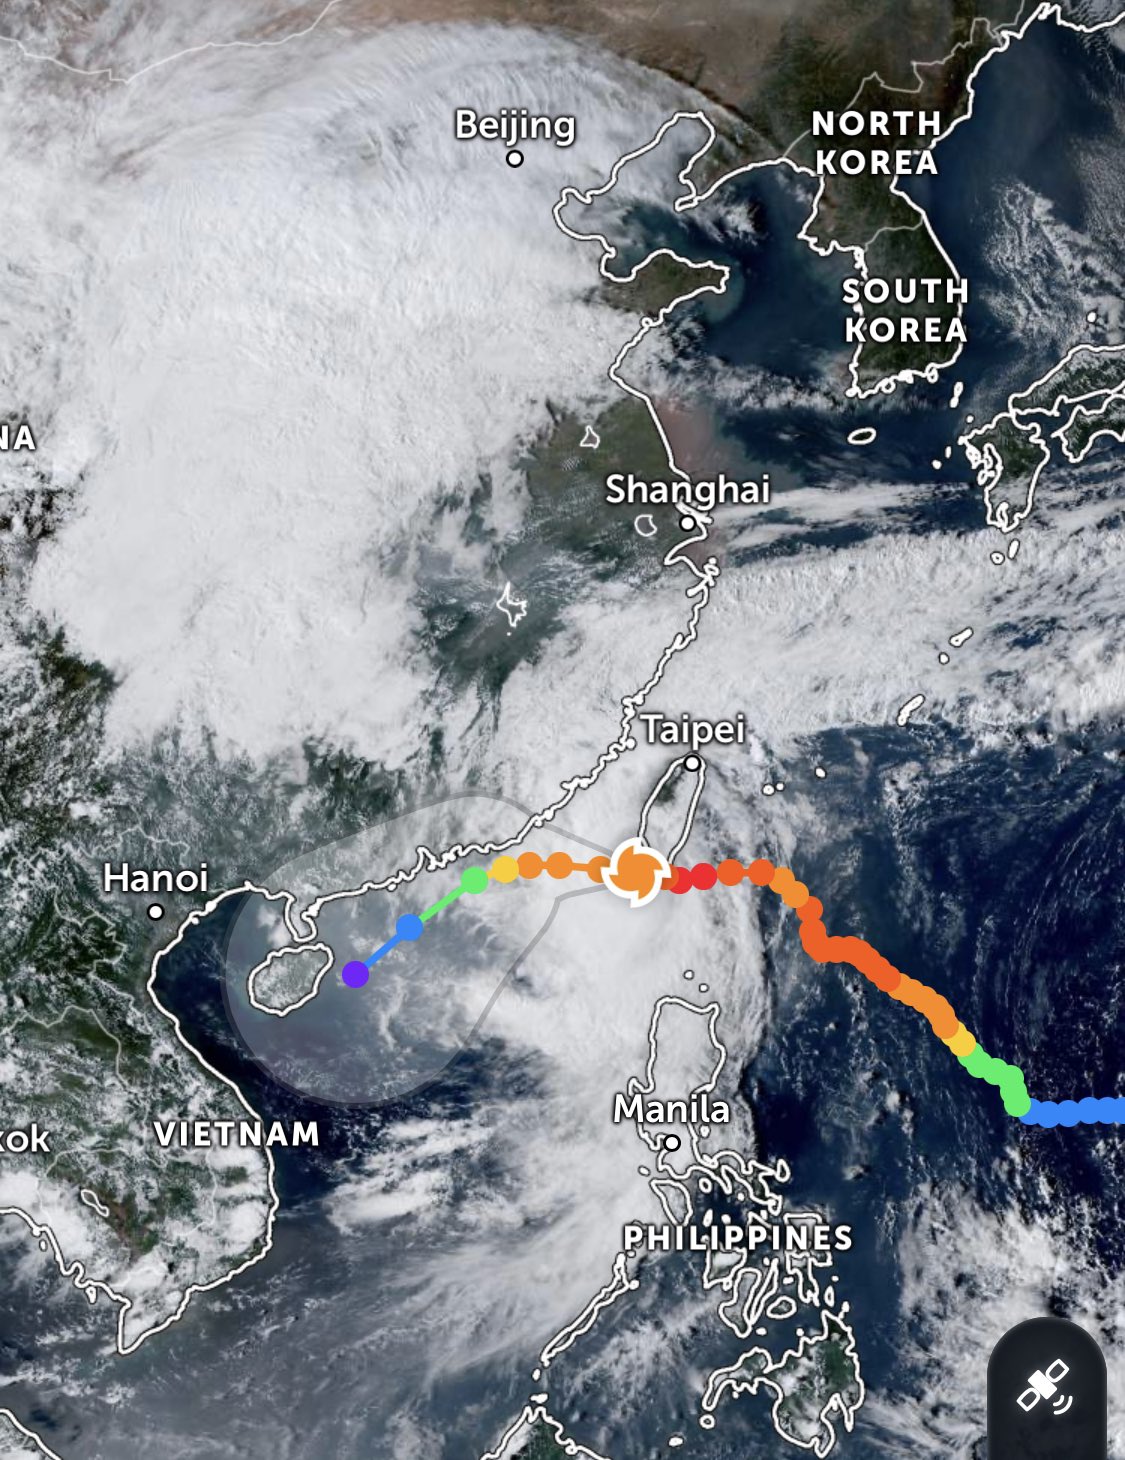 Typhoon Koinu